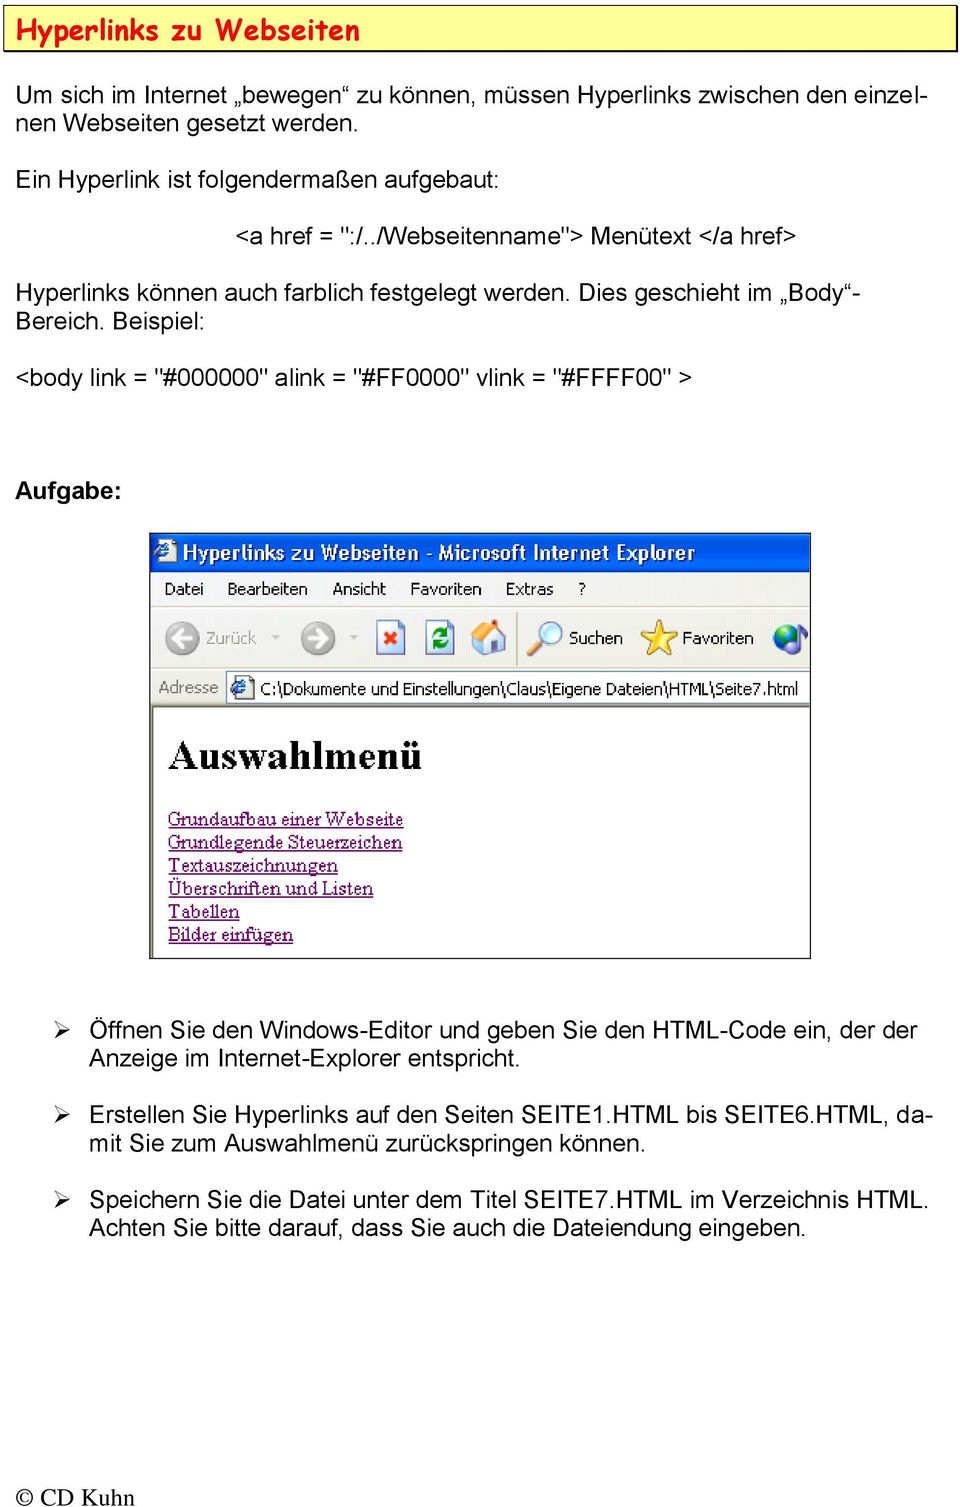 Beispiel: <body link = "#000000" alink = "#FF0000" vlink = "#FFFF00" > Öffnen Sie den Windows-Editor und geben Sie den HTML-Code ein, der der Anzeige im Internet-Explorer entspricht.